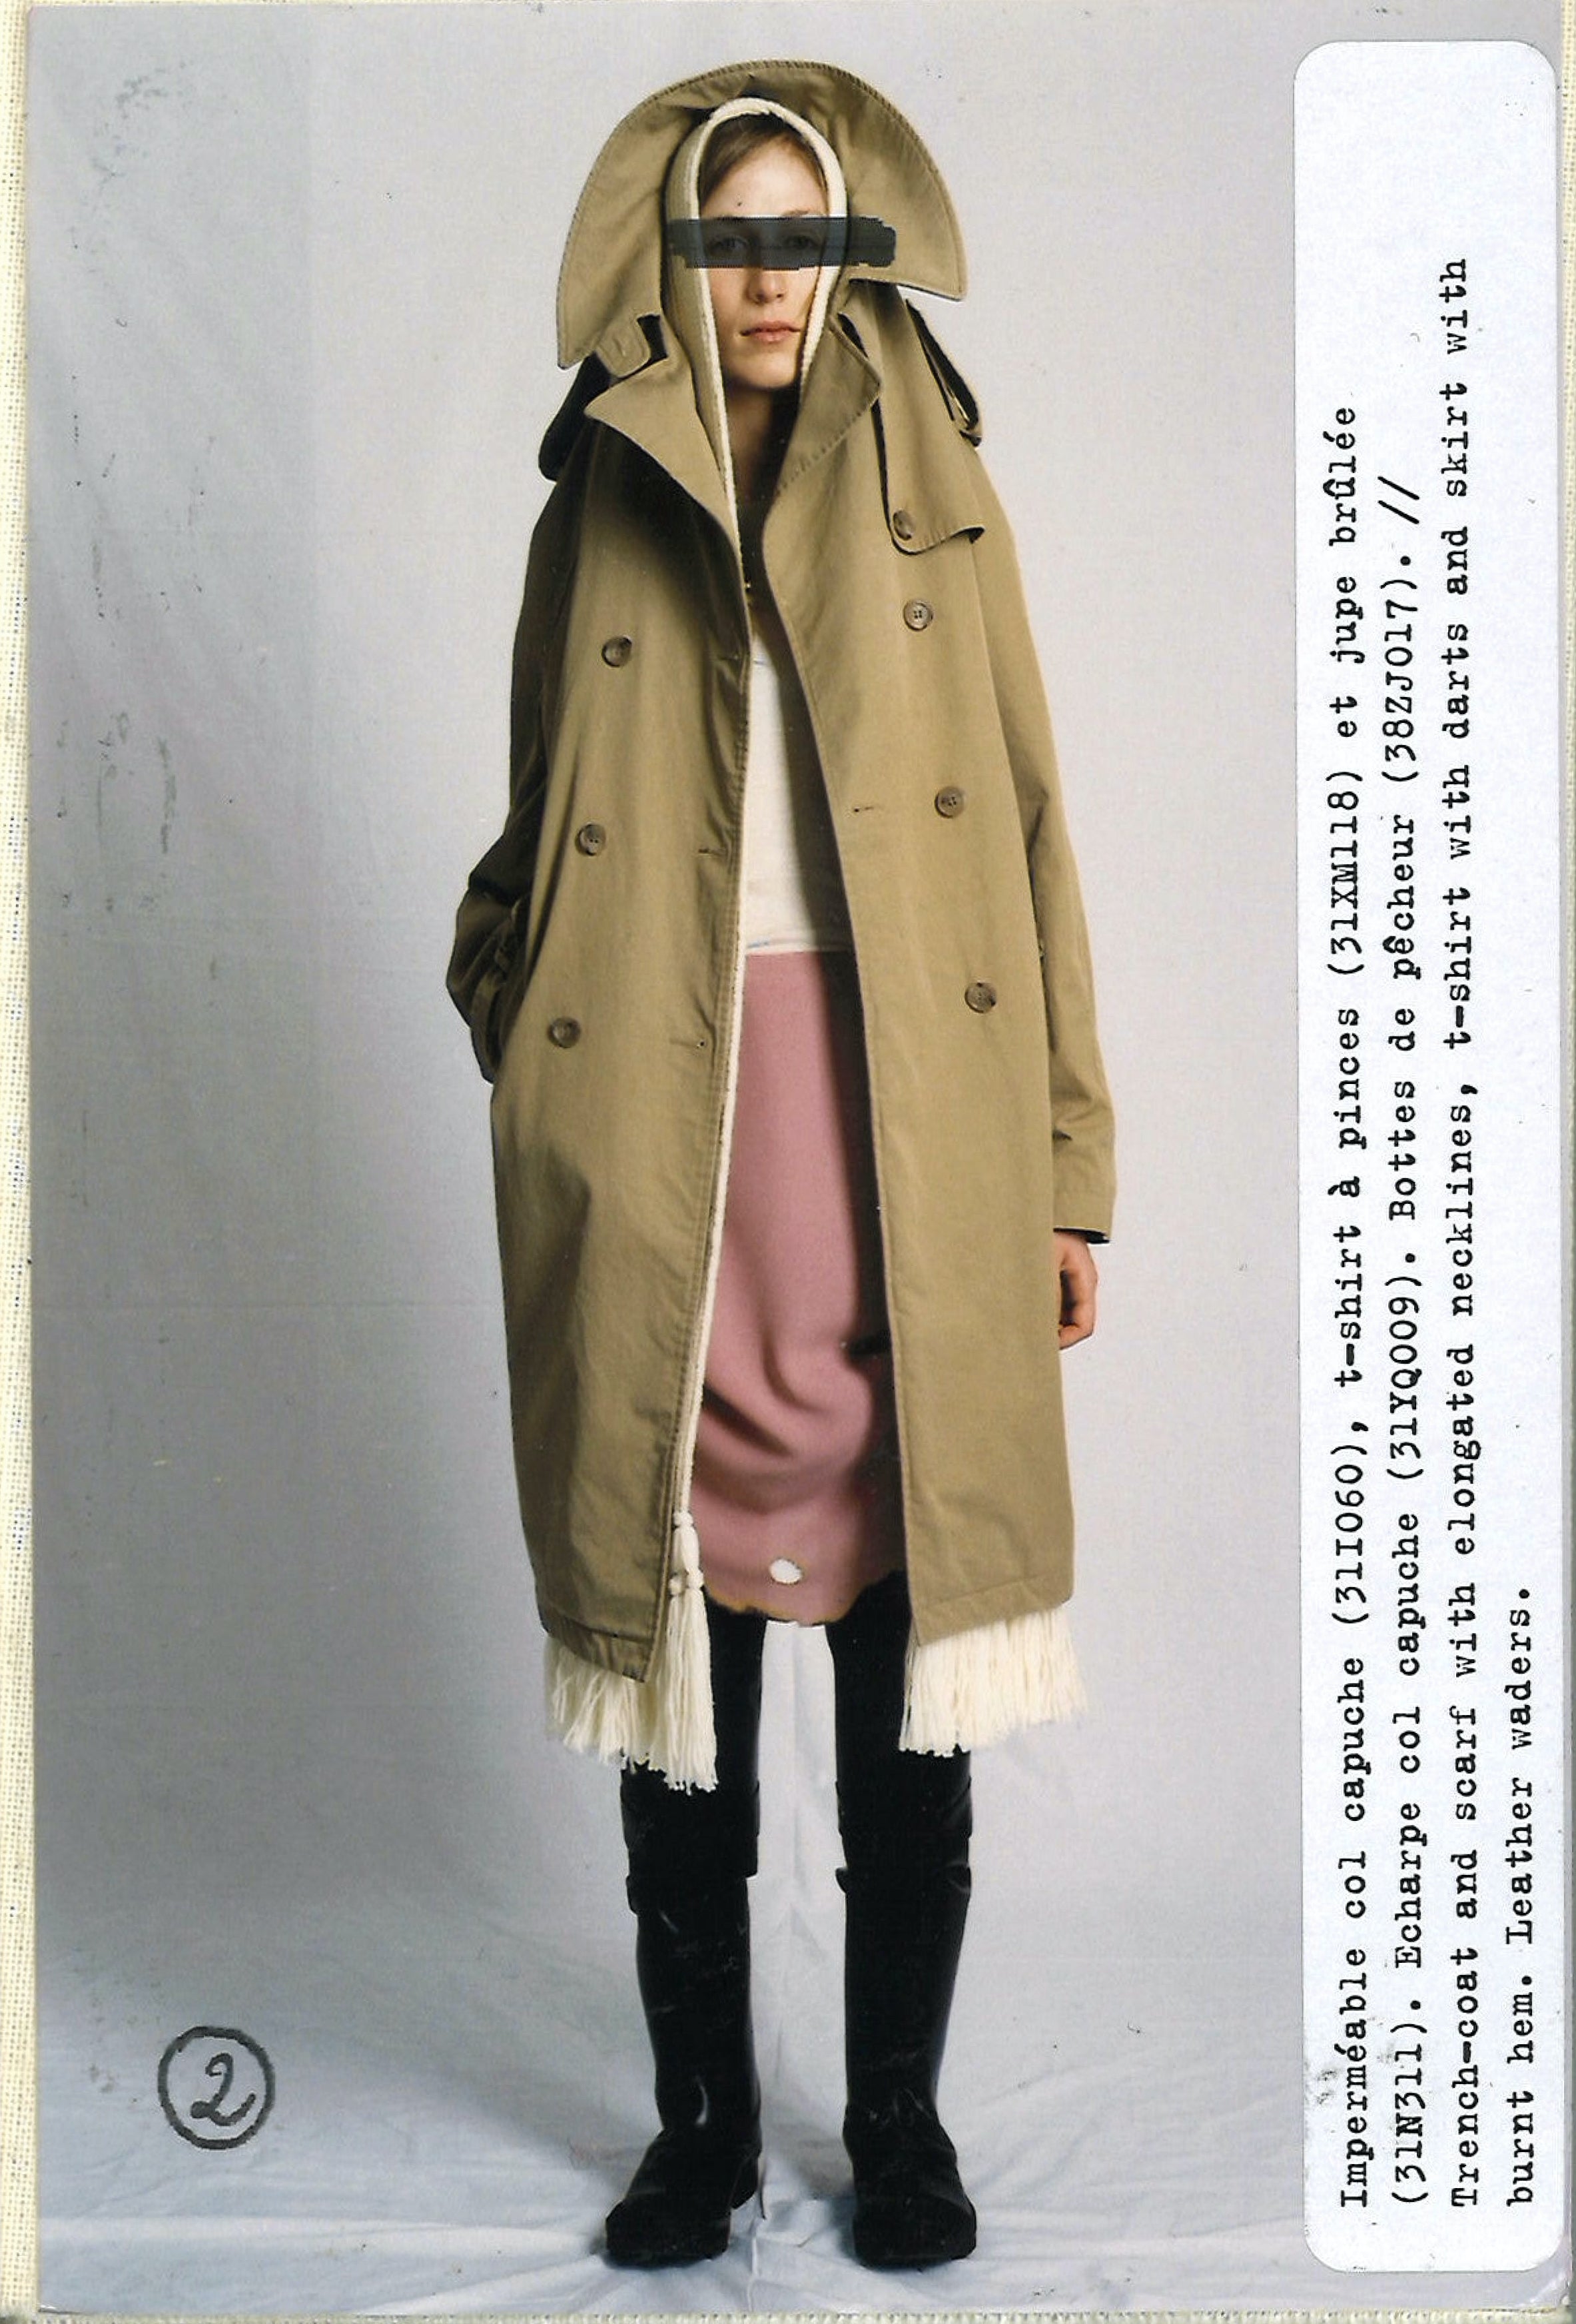 Maison Martin Margiela Lookbook
Womenswear Collection Autumn/Winter 2005-06